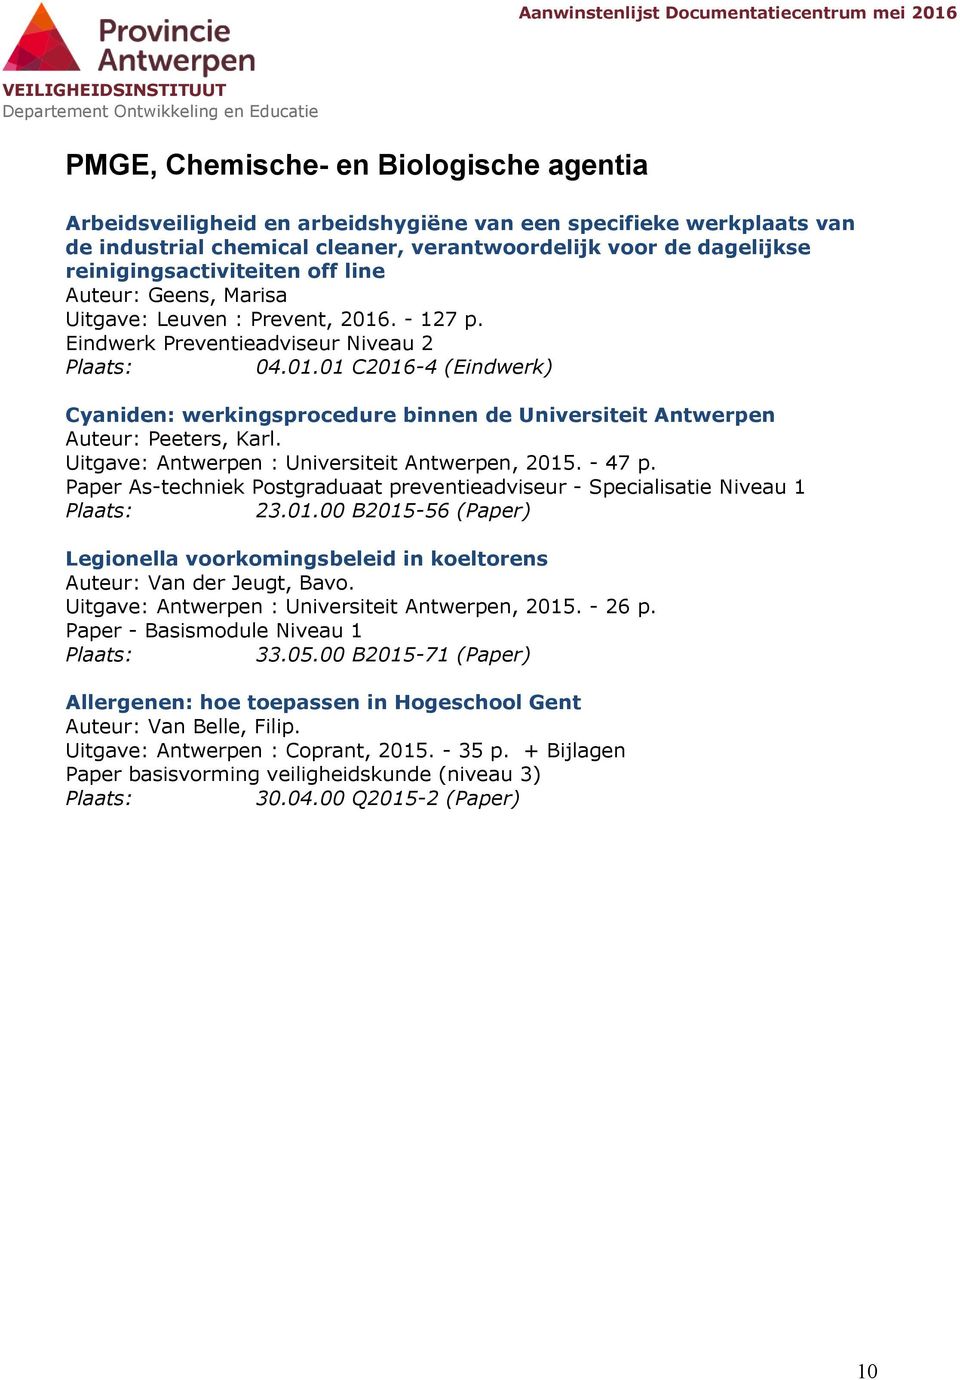 Uitgave: Antwerpen : Universiteit Antwerpen, 2015. - 47 p. 23.01.00 B2015-56 (Paper) Legionella voorkomingsbeleid in koeltorens Auteur: Van der Jeugt, Bavo.